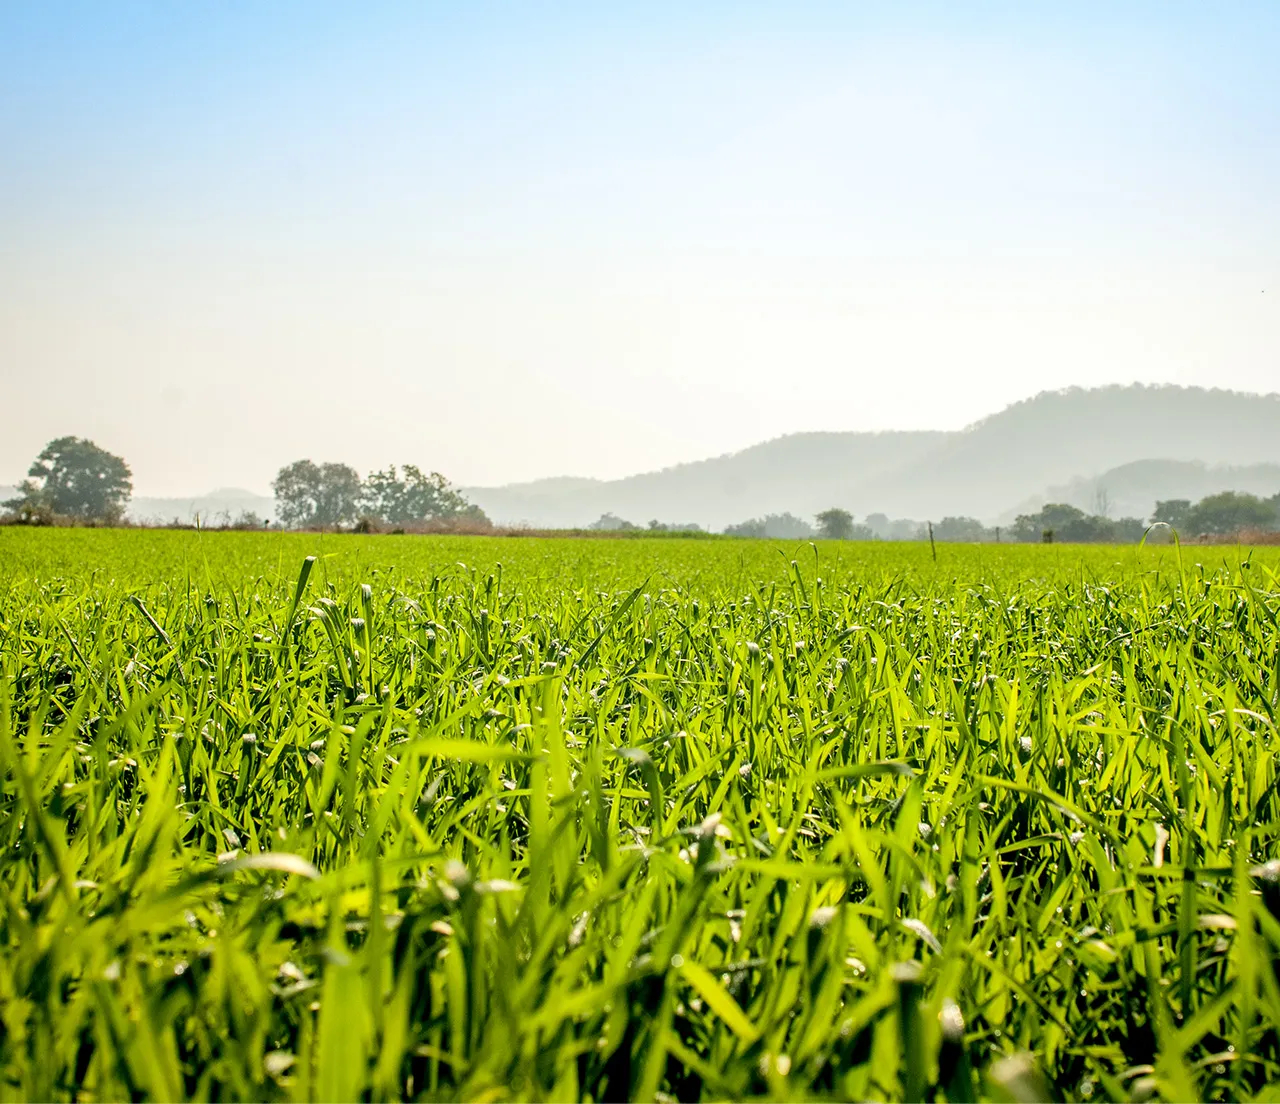 Sebuah gambar menampilkan lapangan pertanian yang hijau